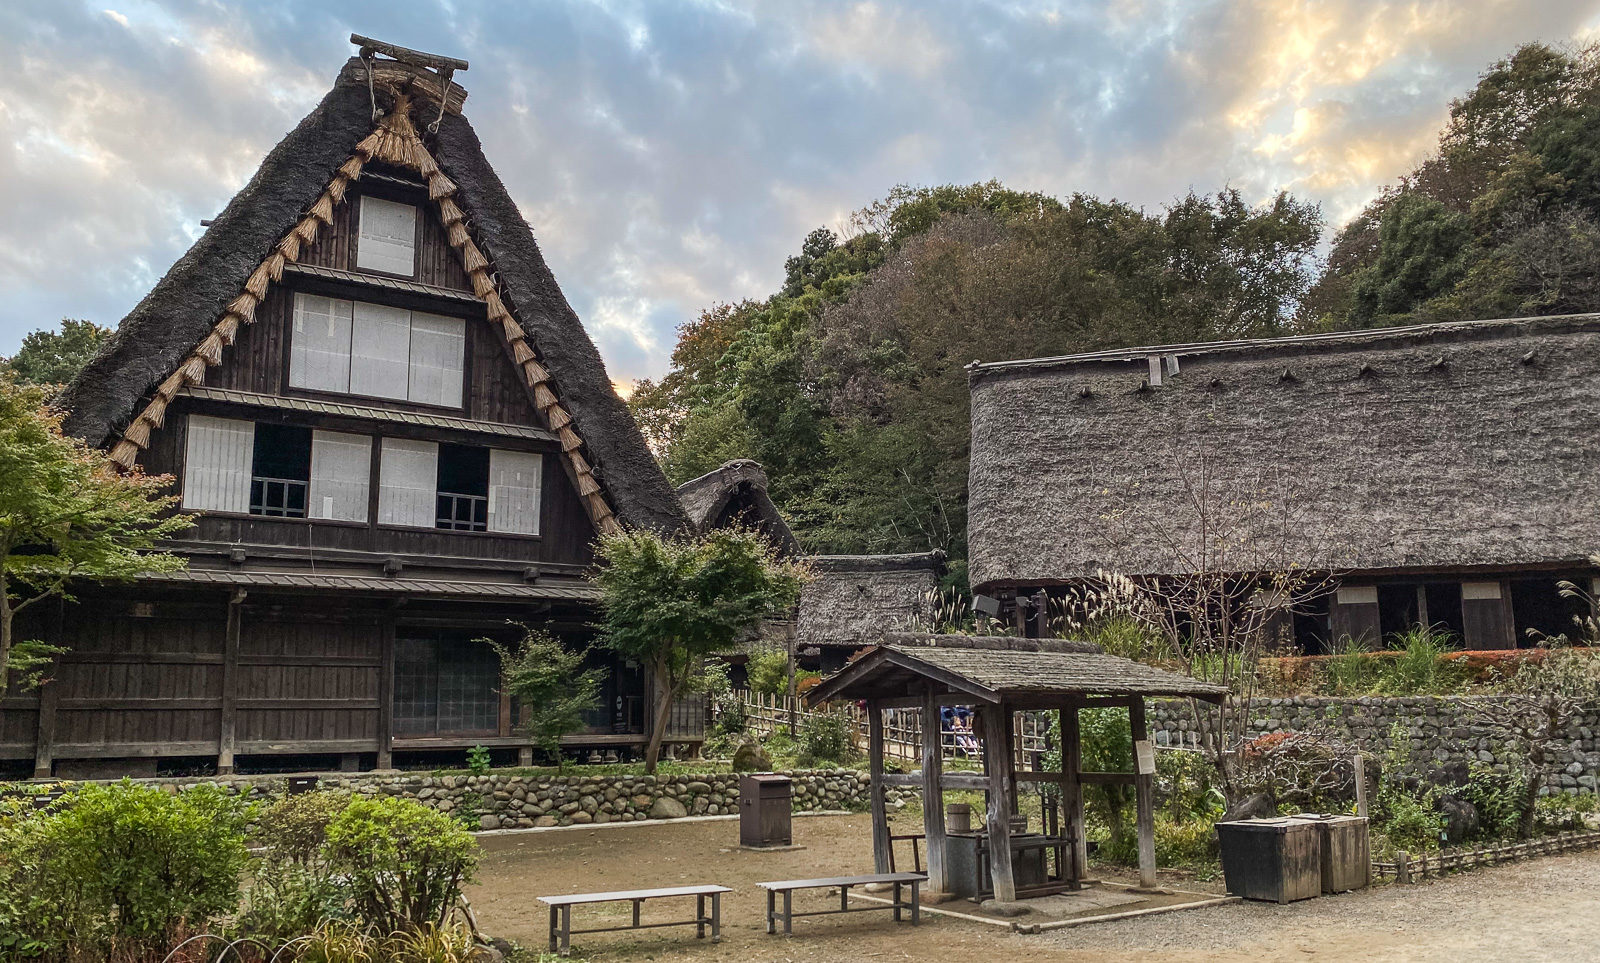 Νιχόν Μινκαέν, ένα υπαίθριο μουσείο με παραδοσιακά κτίρια της Ιαπωνίας